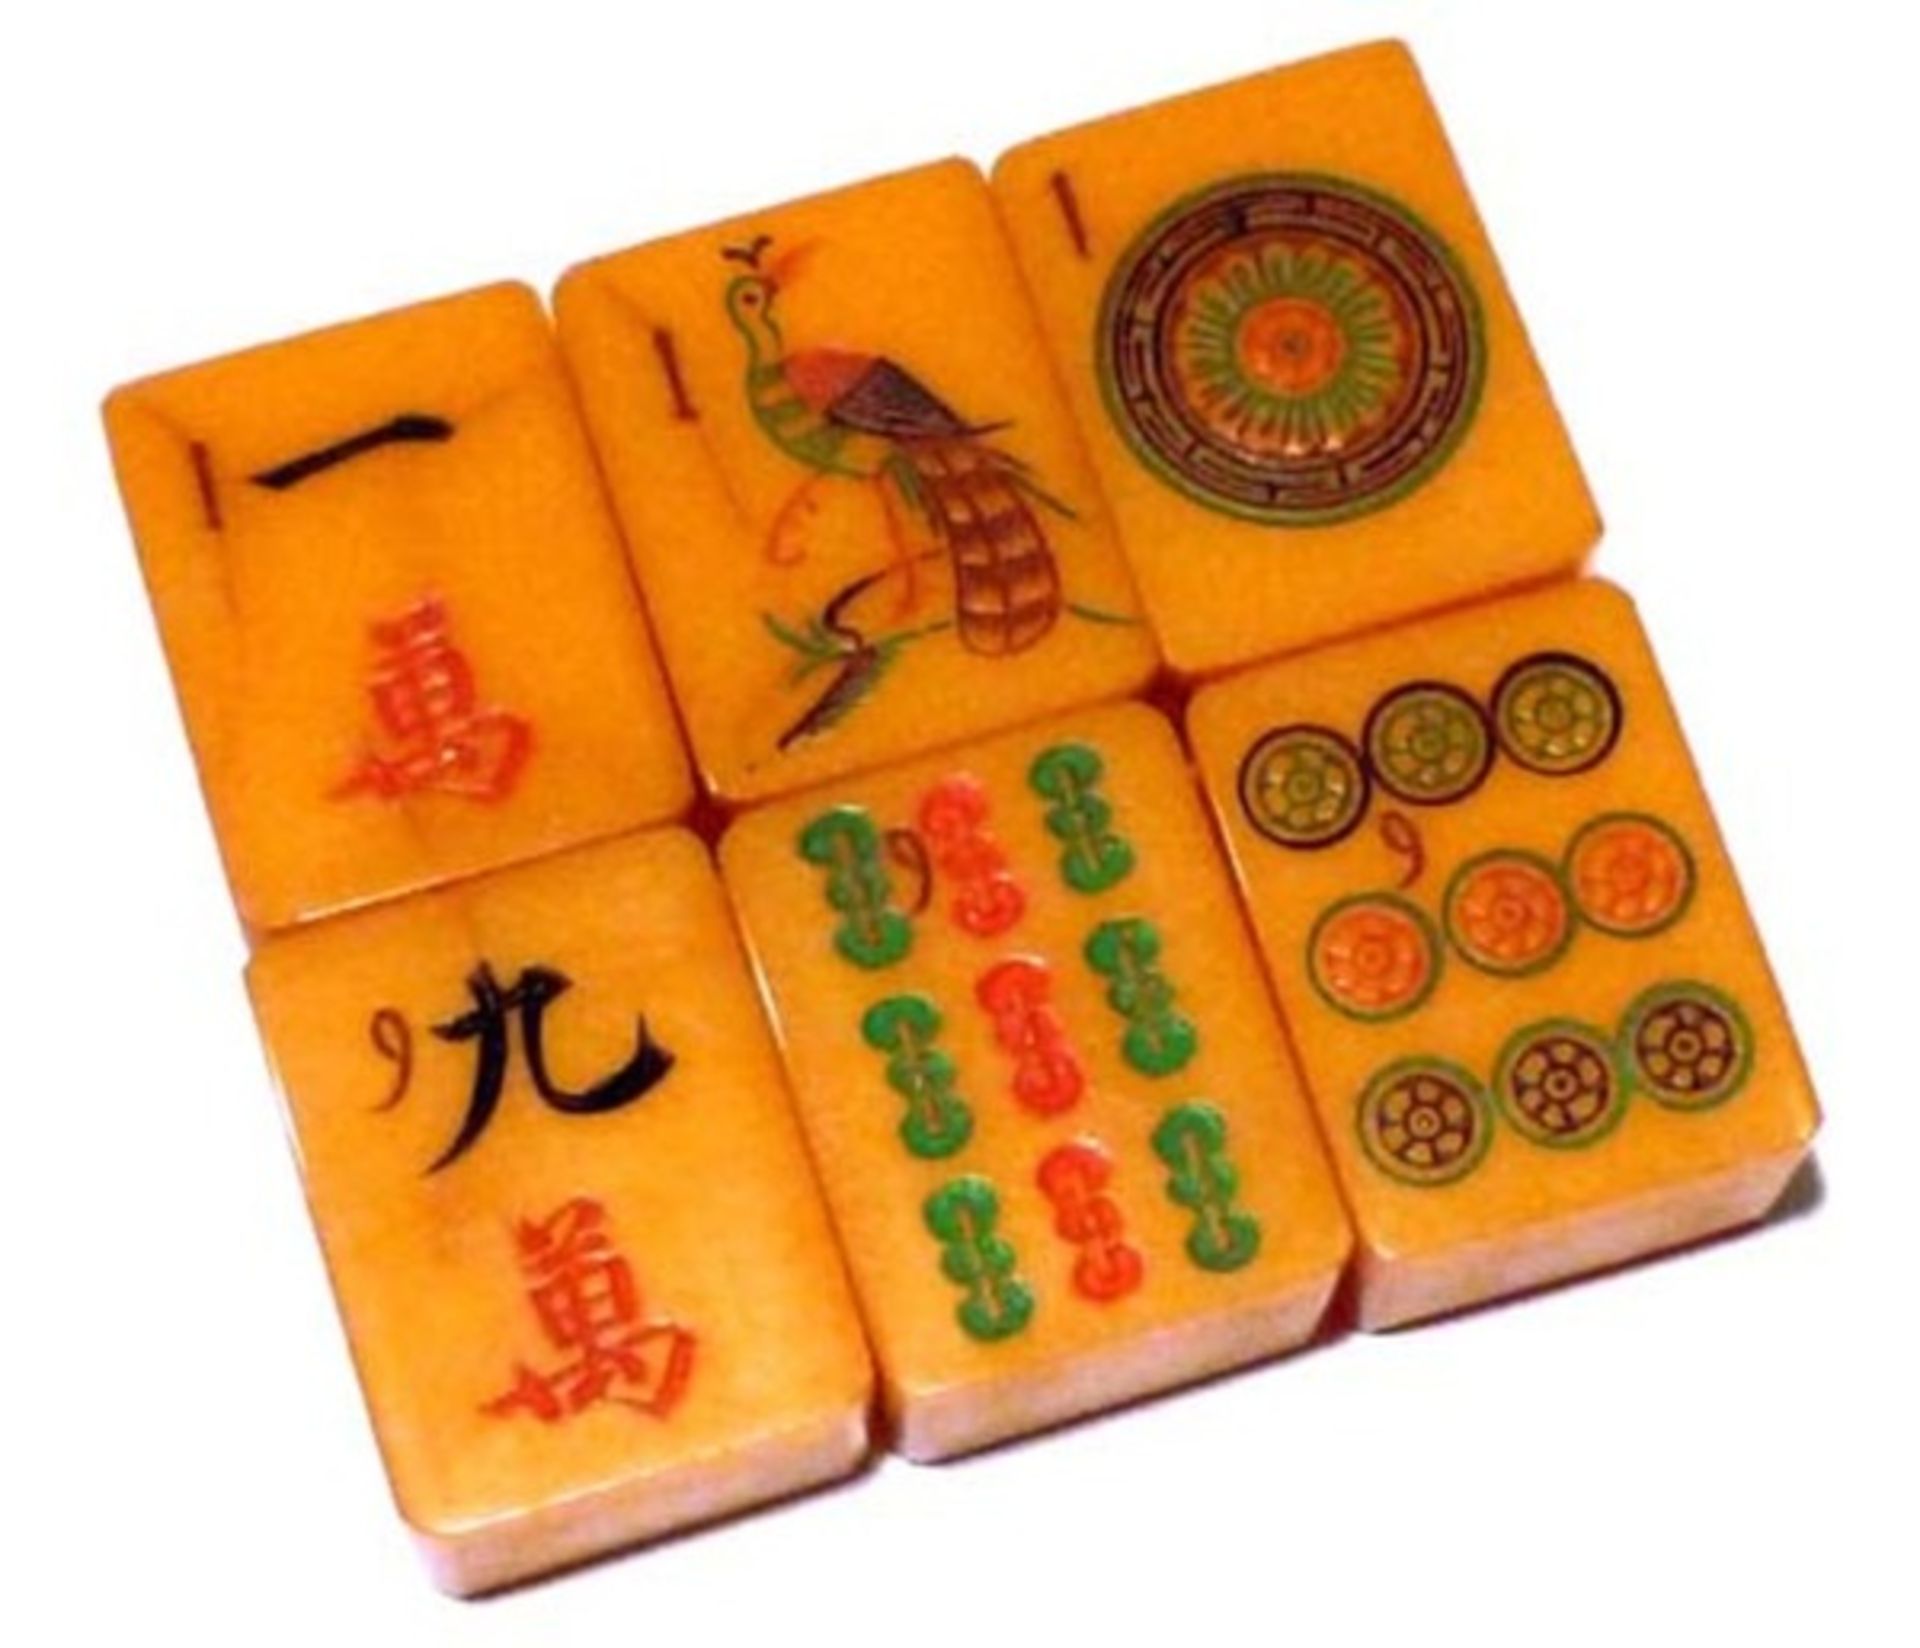 (Mahjong) Mahjong kunststof, traditionele 5-laden doos, ca. 1923 - Bild 13 aus 13